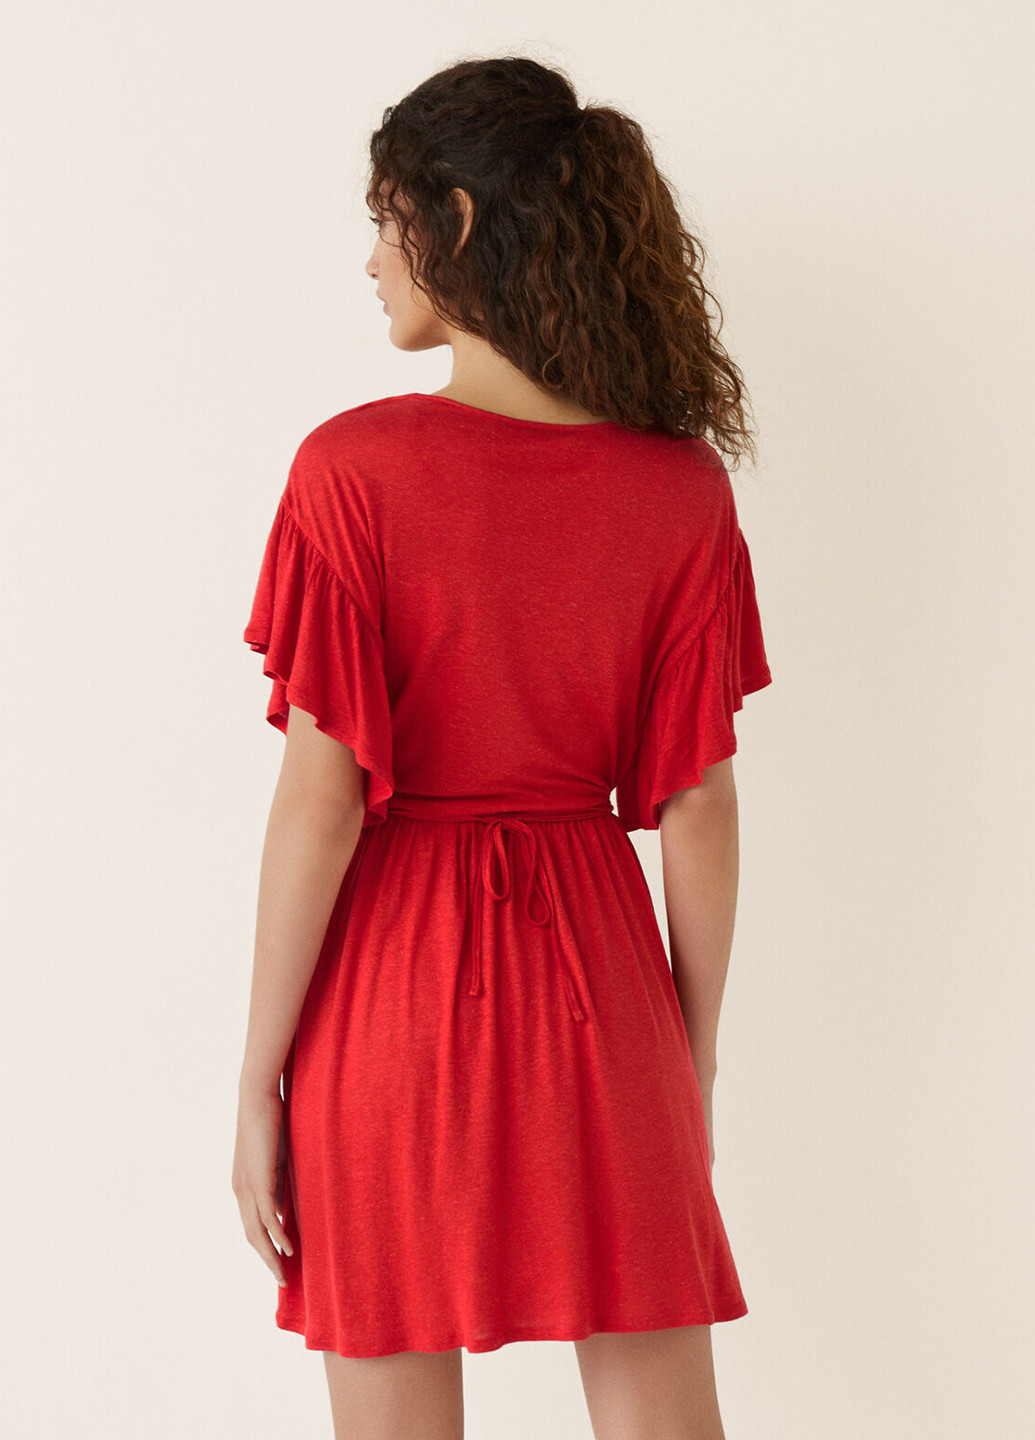 Червона пляжна плаття, сукня на запах Women'secret однотонна